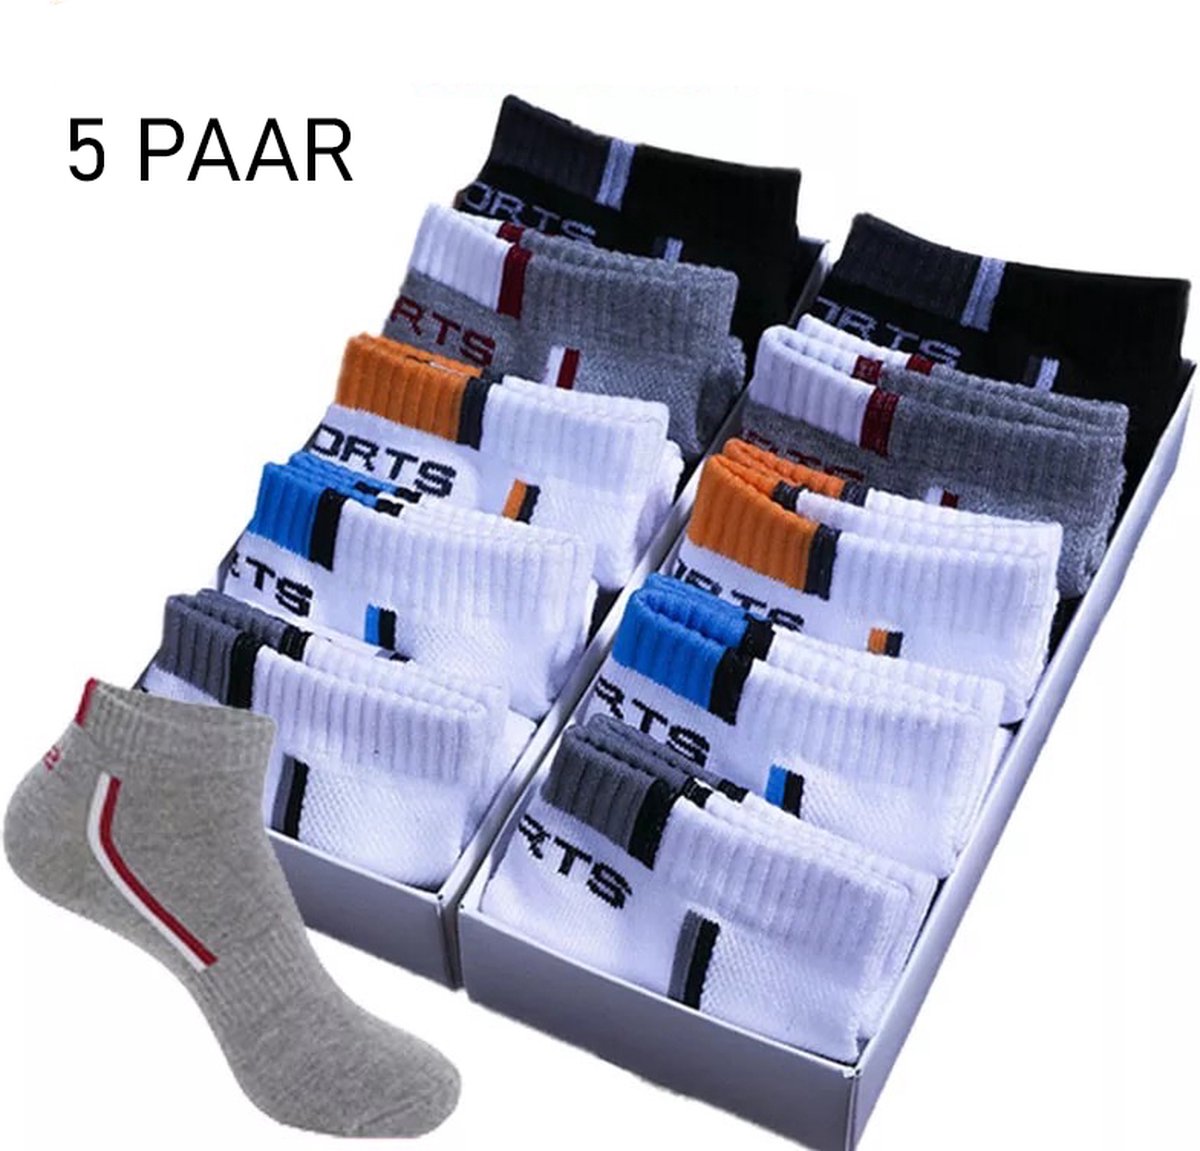 Lage sportsokken - 5 Pack - Super Ademend - Maat 40-44 - Unisex - Comfortabele enkelsokken voor man en vrouw - Sokken met Mesh